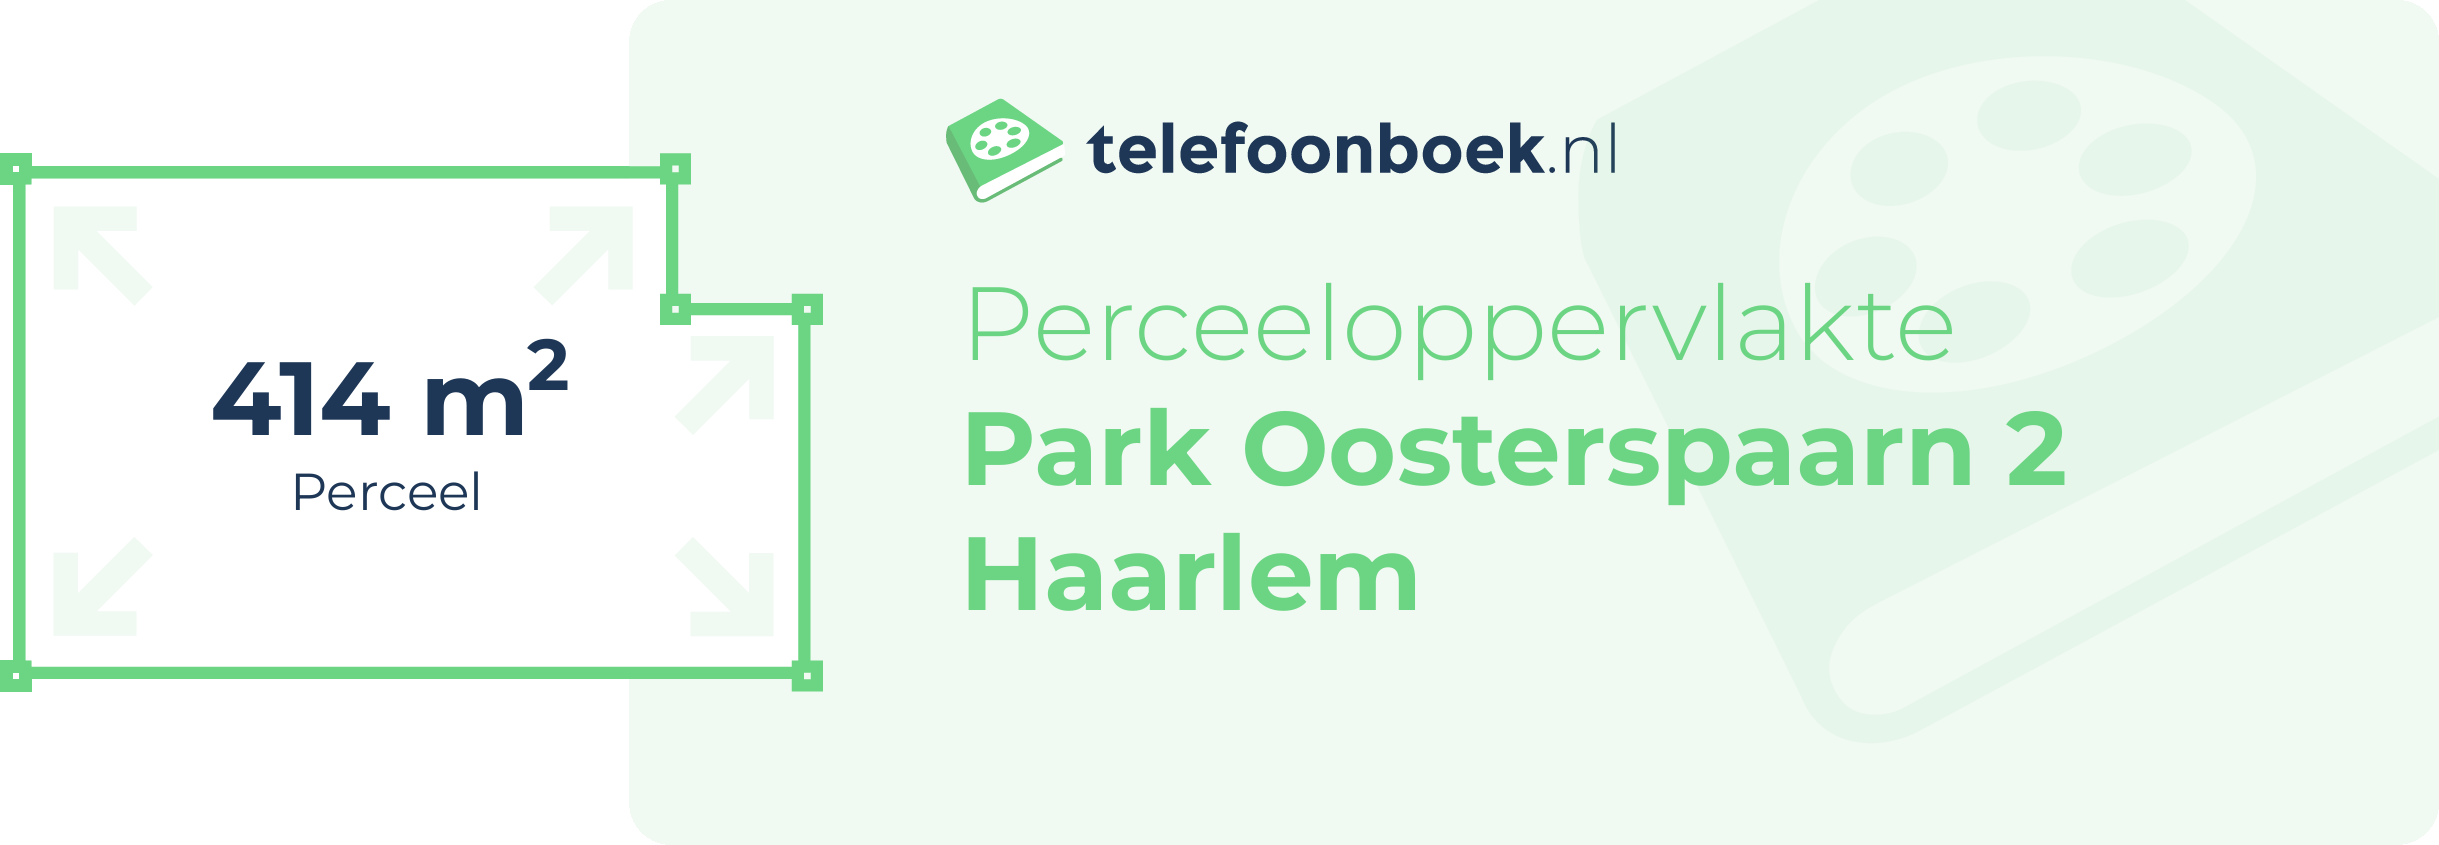 Perceeloppervlakte Park Oosterspaarn 2 Haarlem